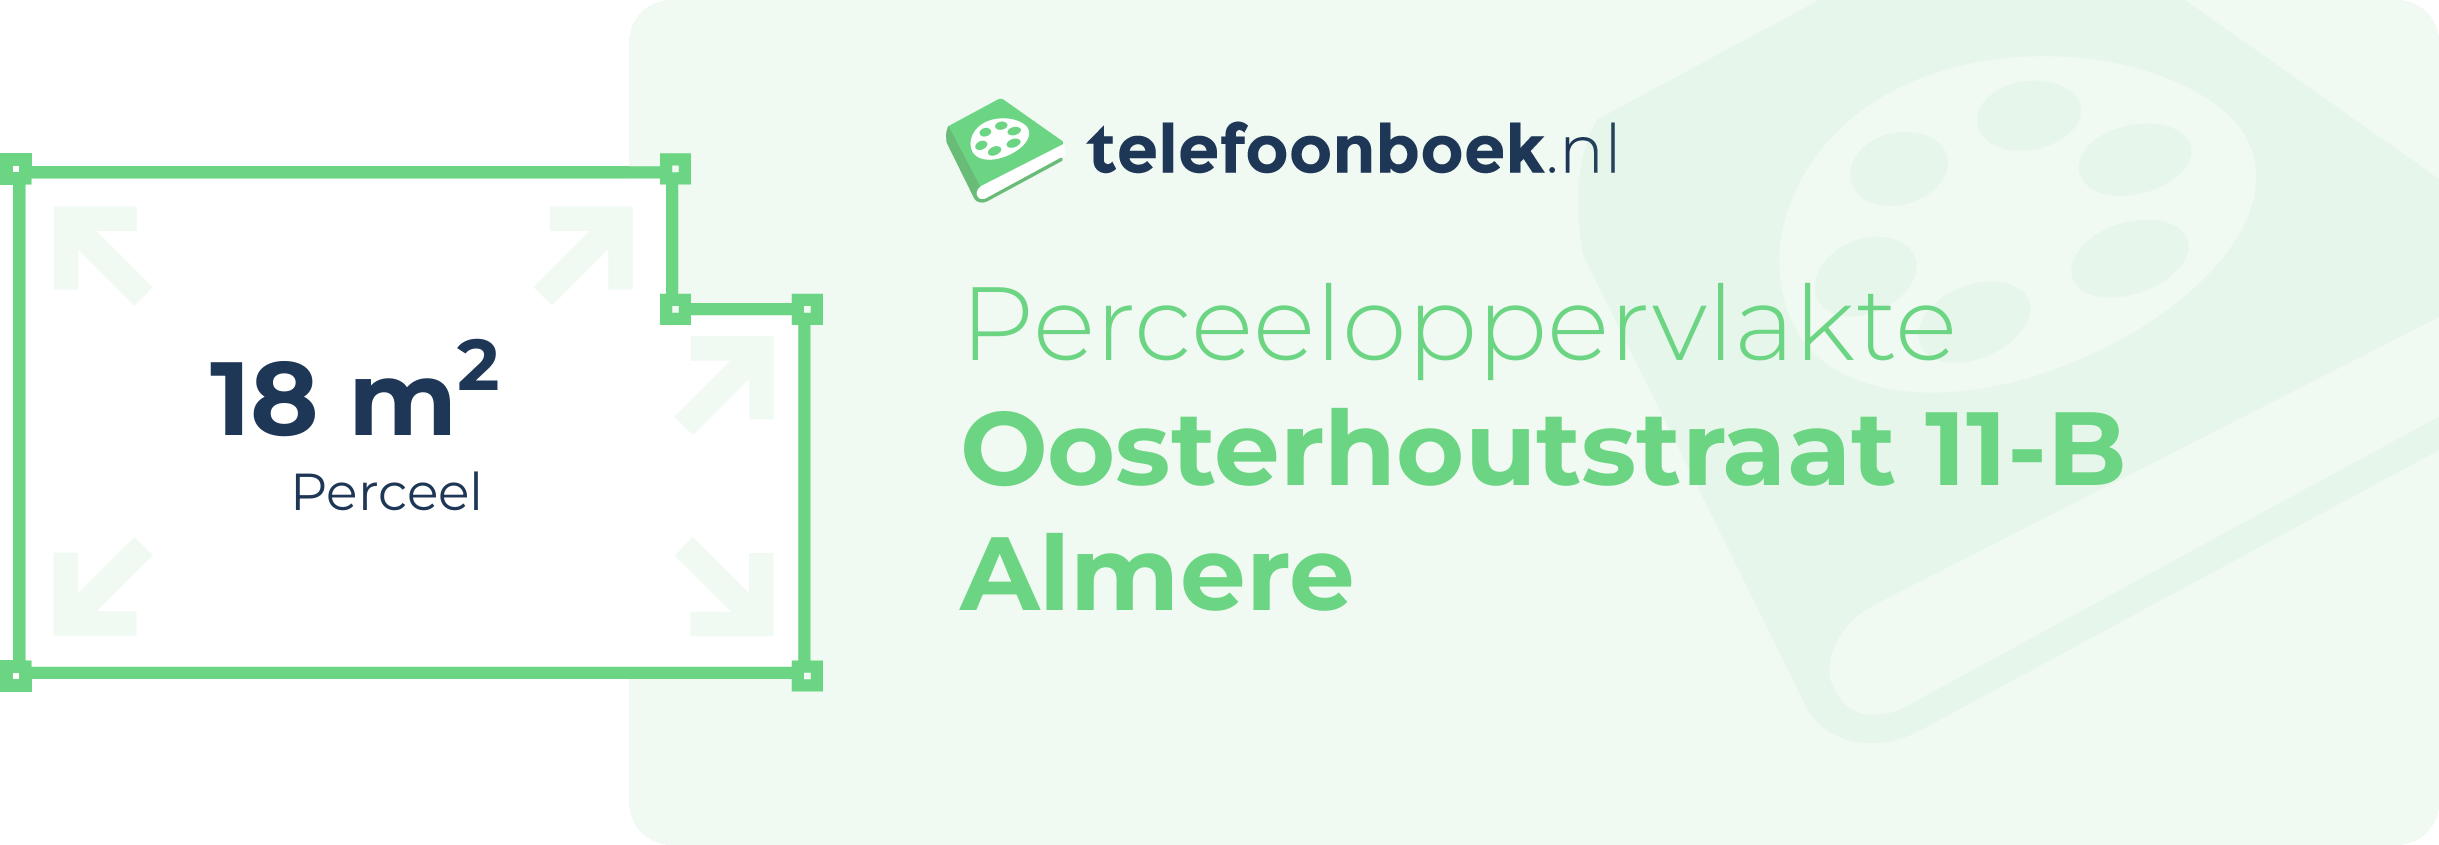 Perceeloppervlakte Oosterhoutstraat 11-B Almere